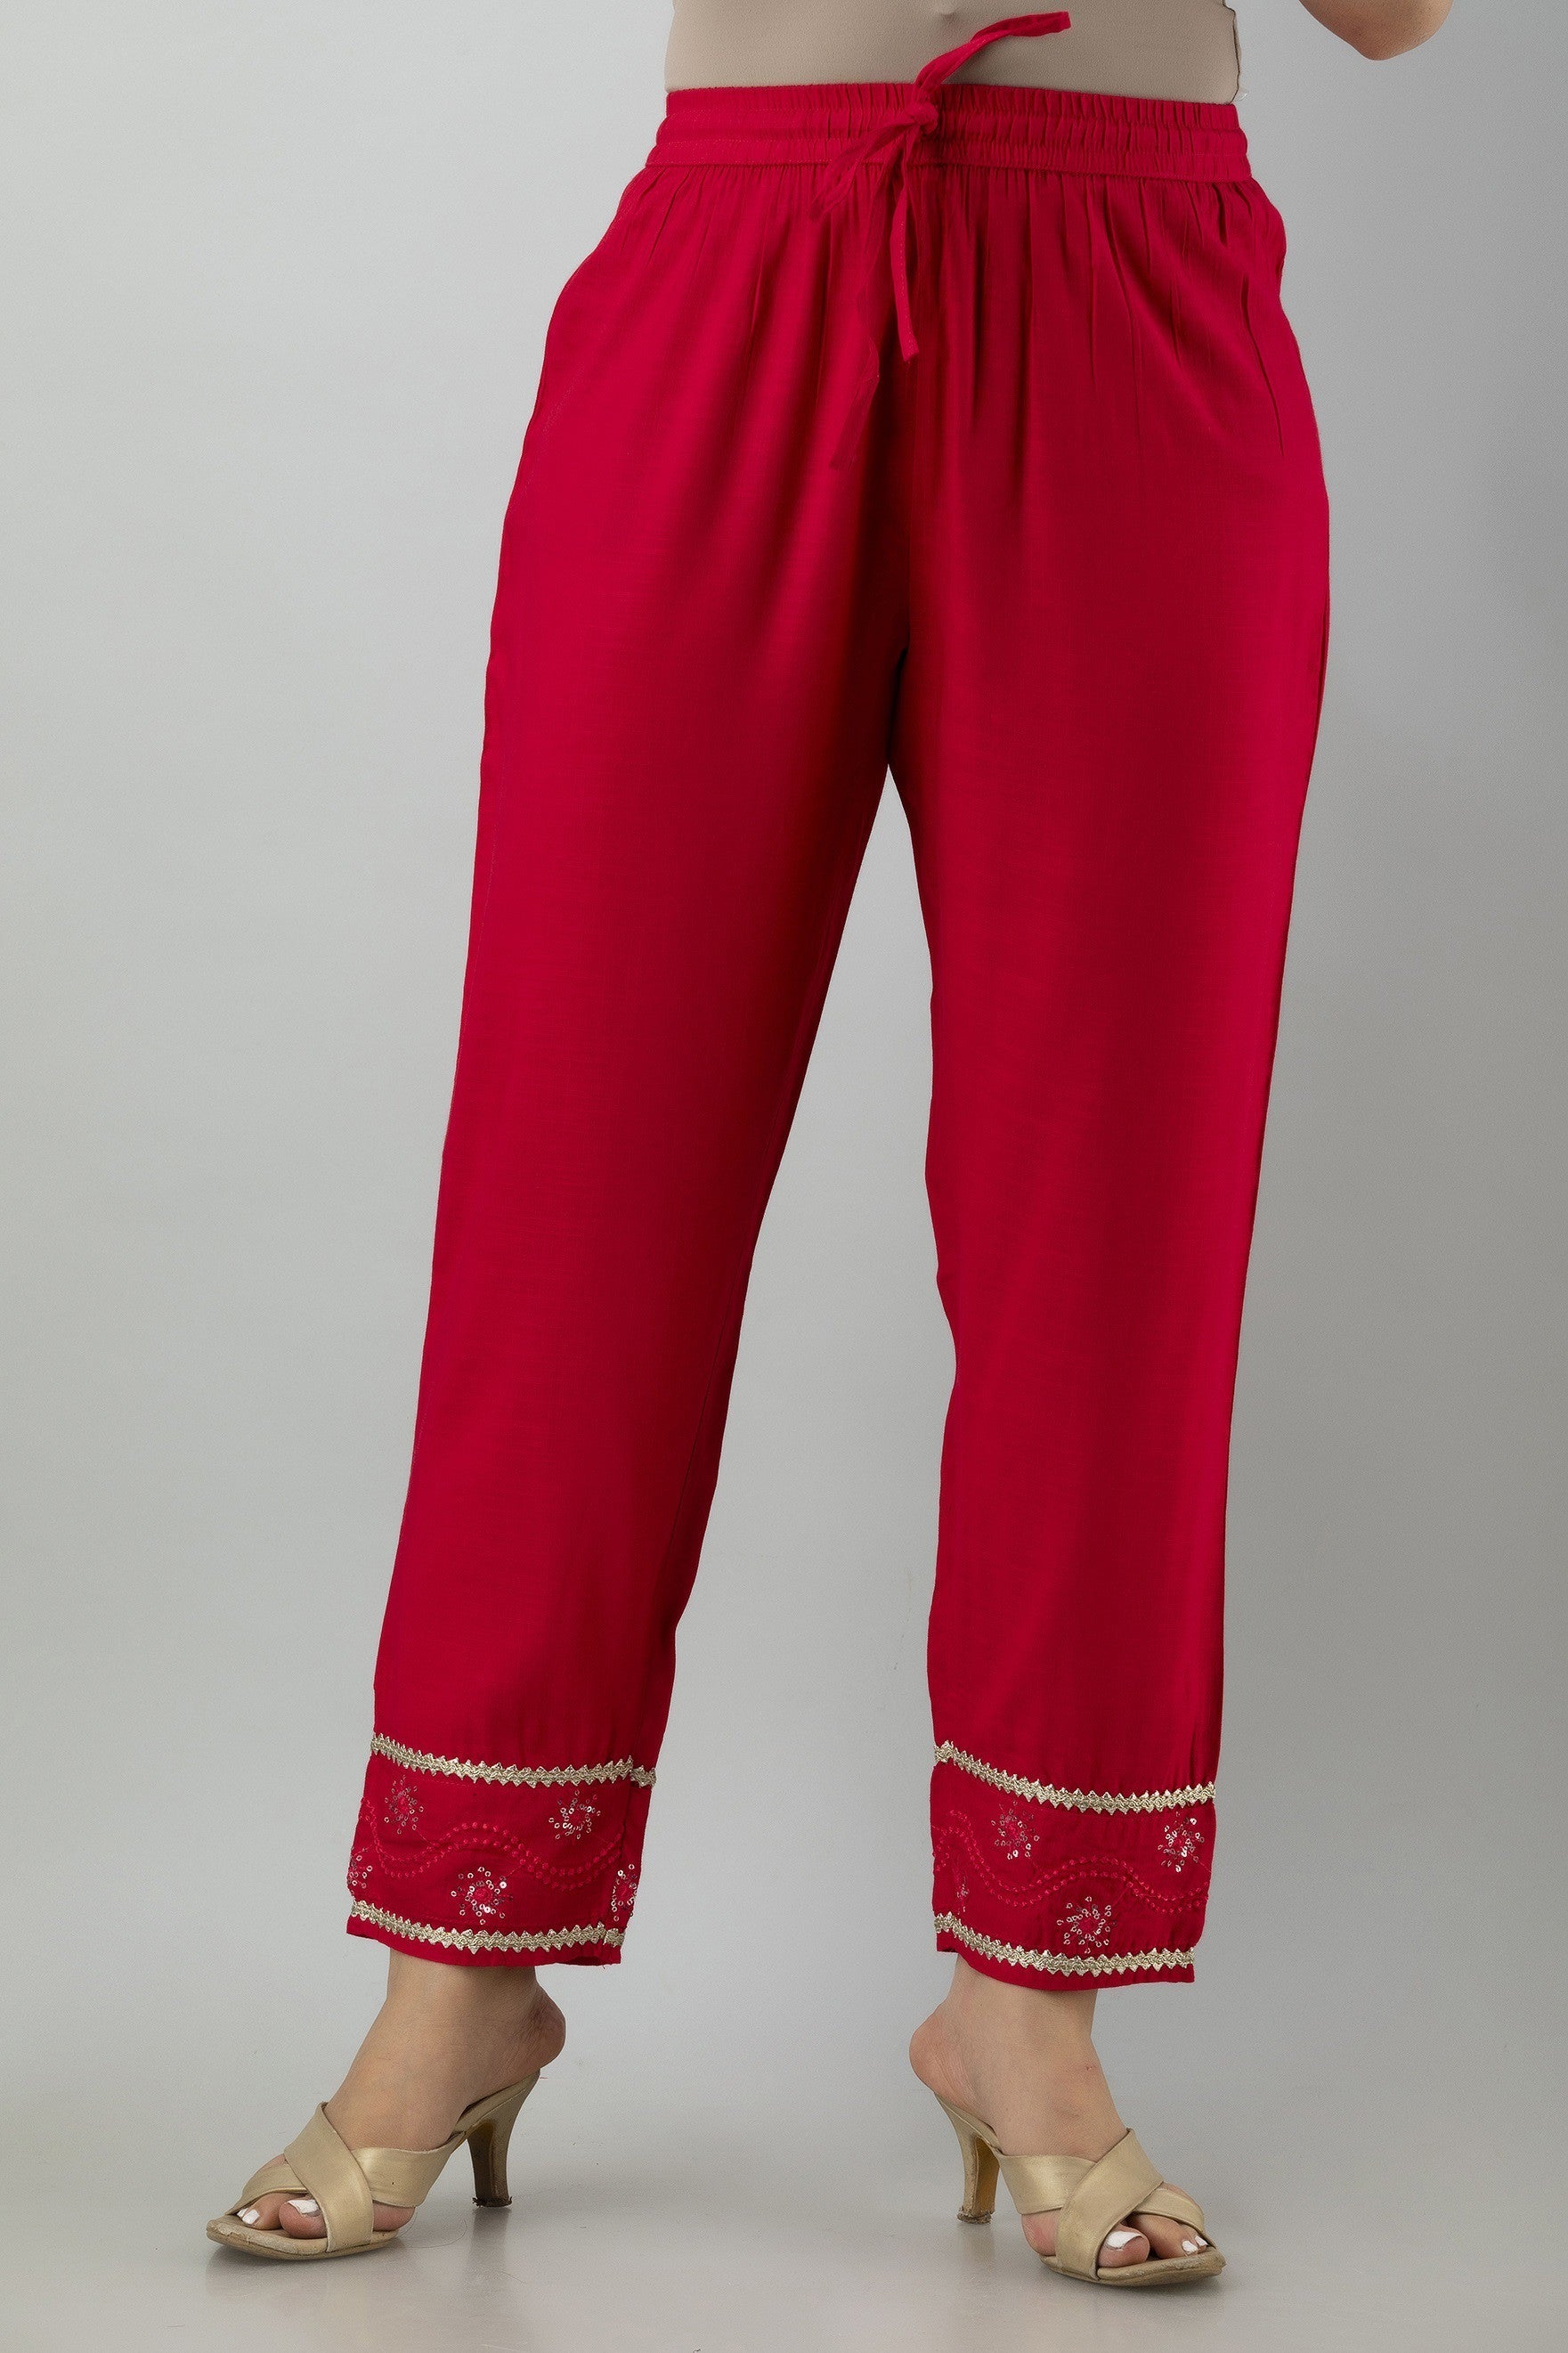 Women's Embroidered Viscose Rayon Straight Kurta Pant Set (Pink) - Charu